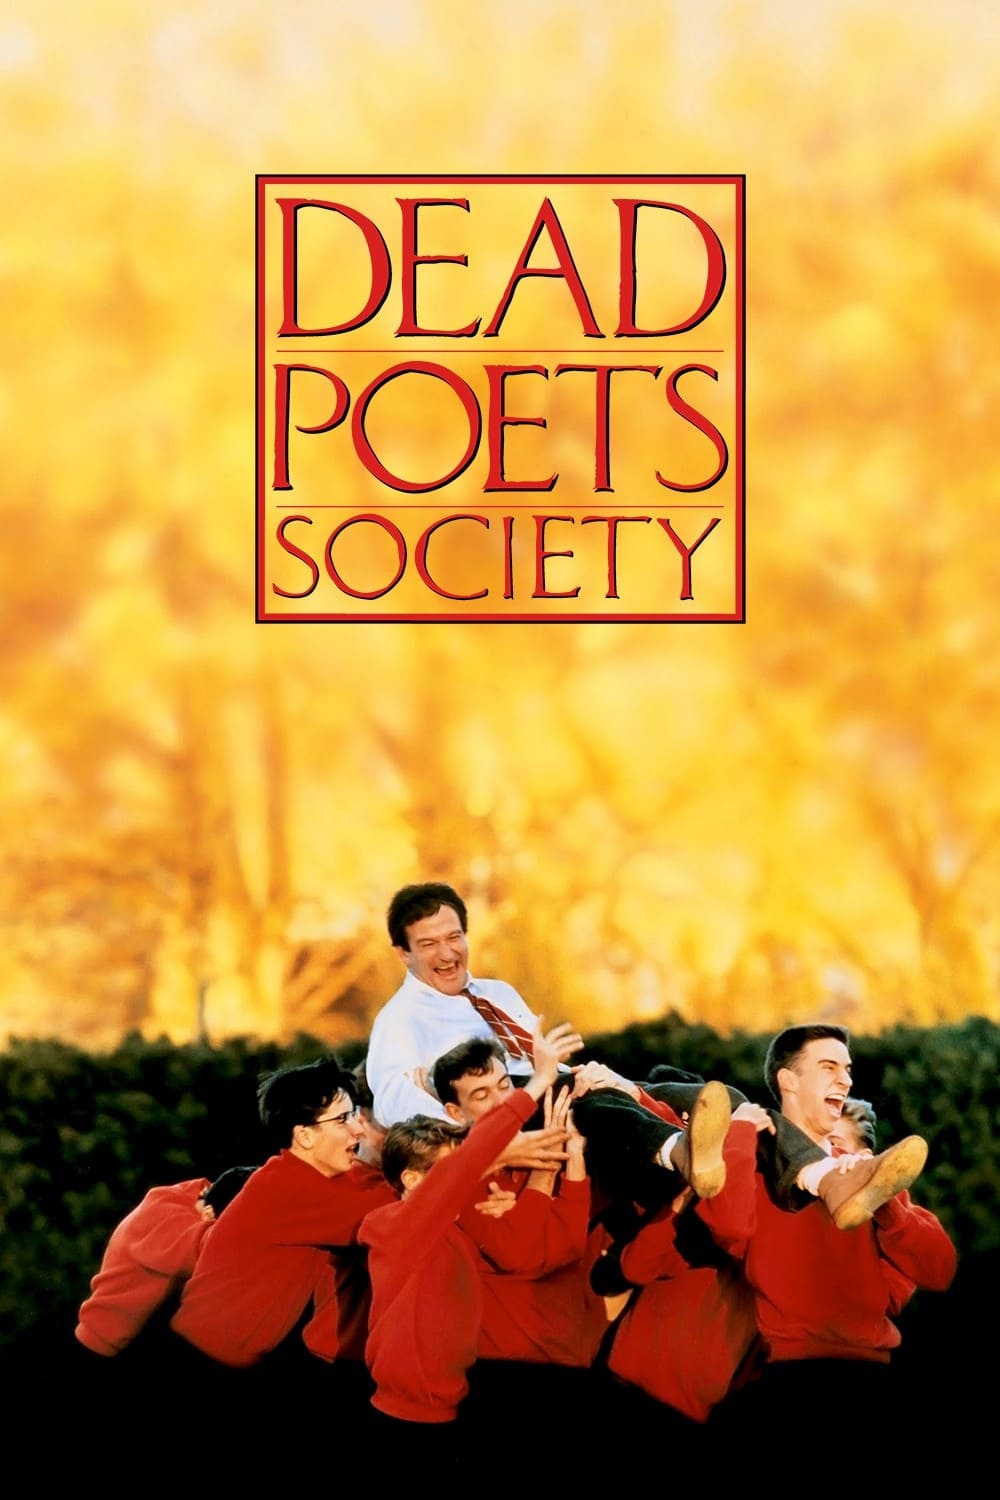 انجمن شاعران مرده